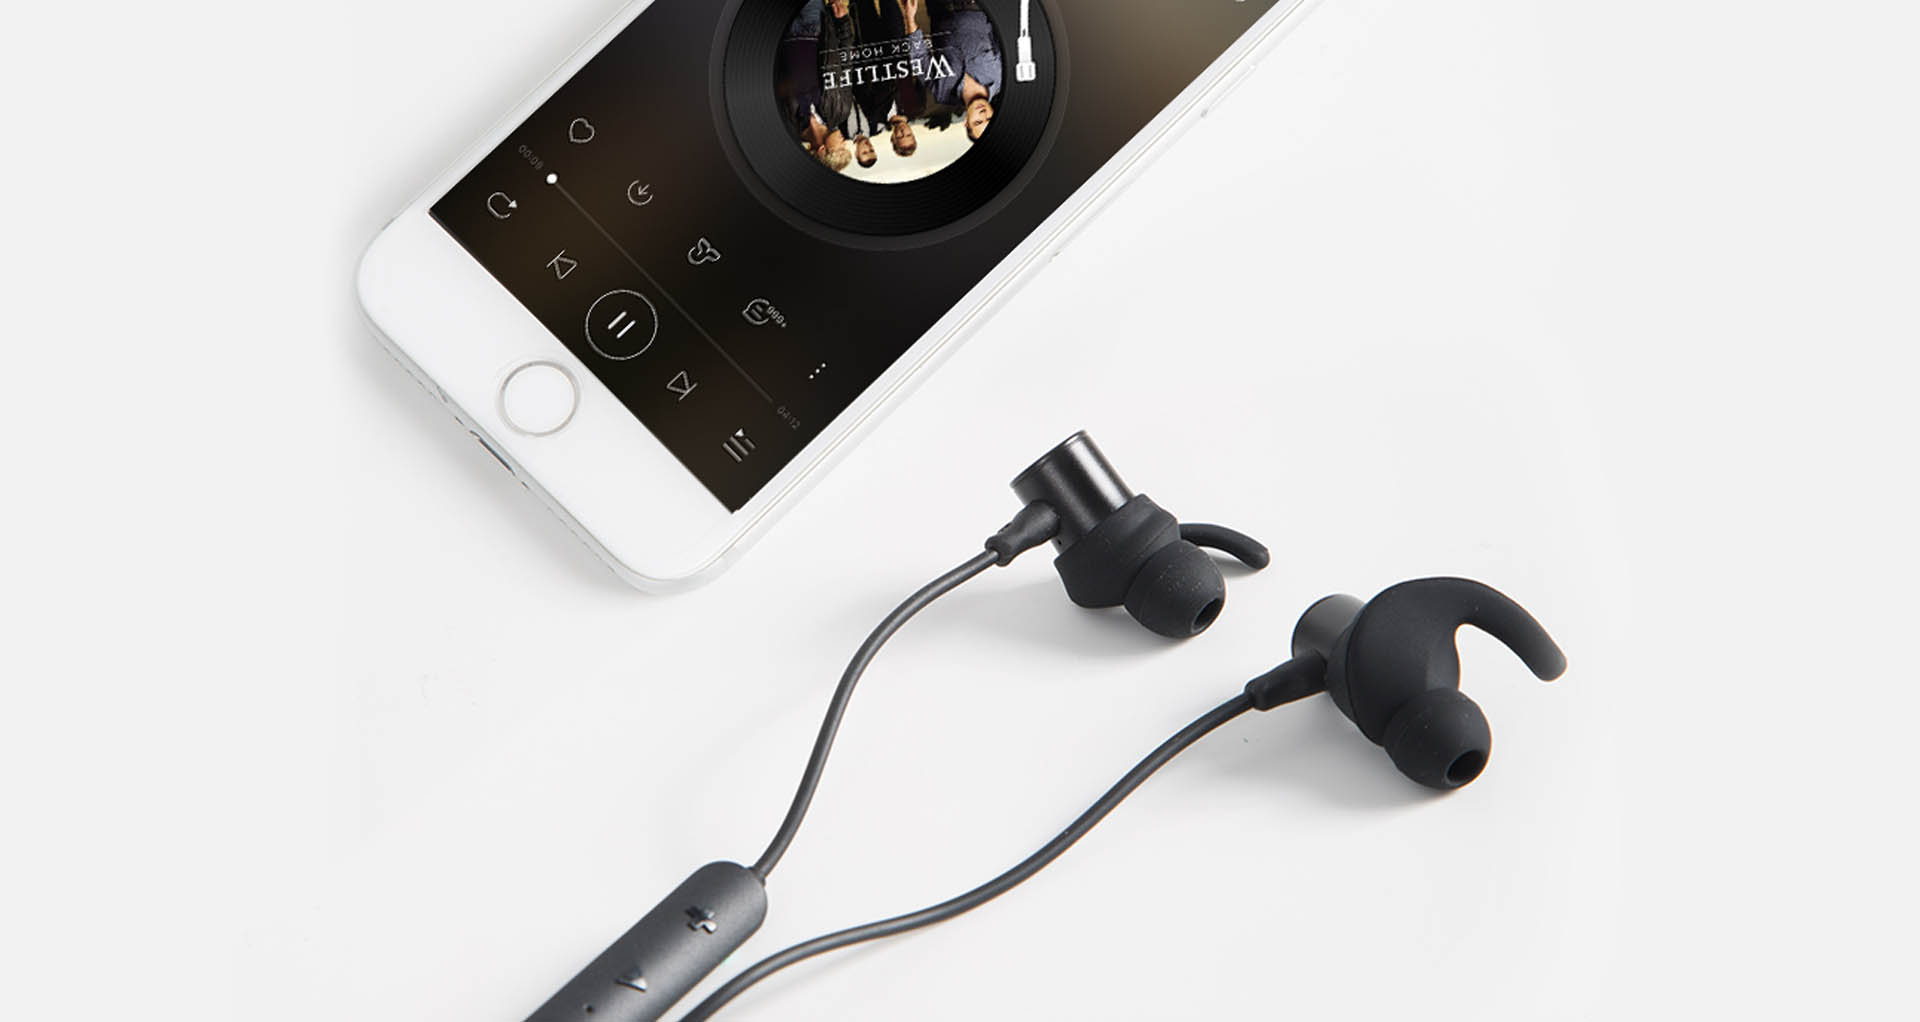 Thiết kế tiện ích cùng tai nghe Soundpeats Q30 HD